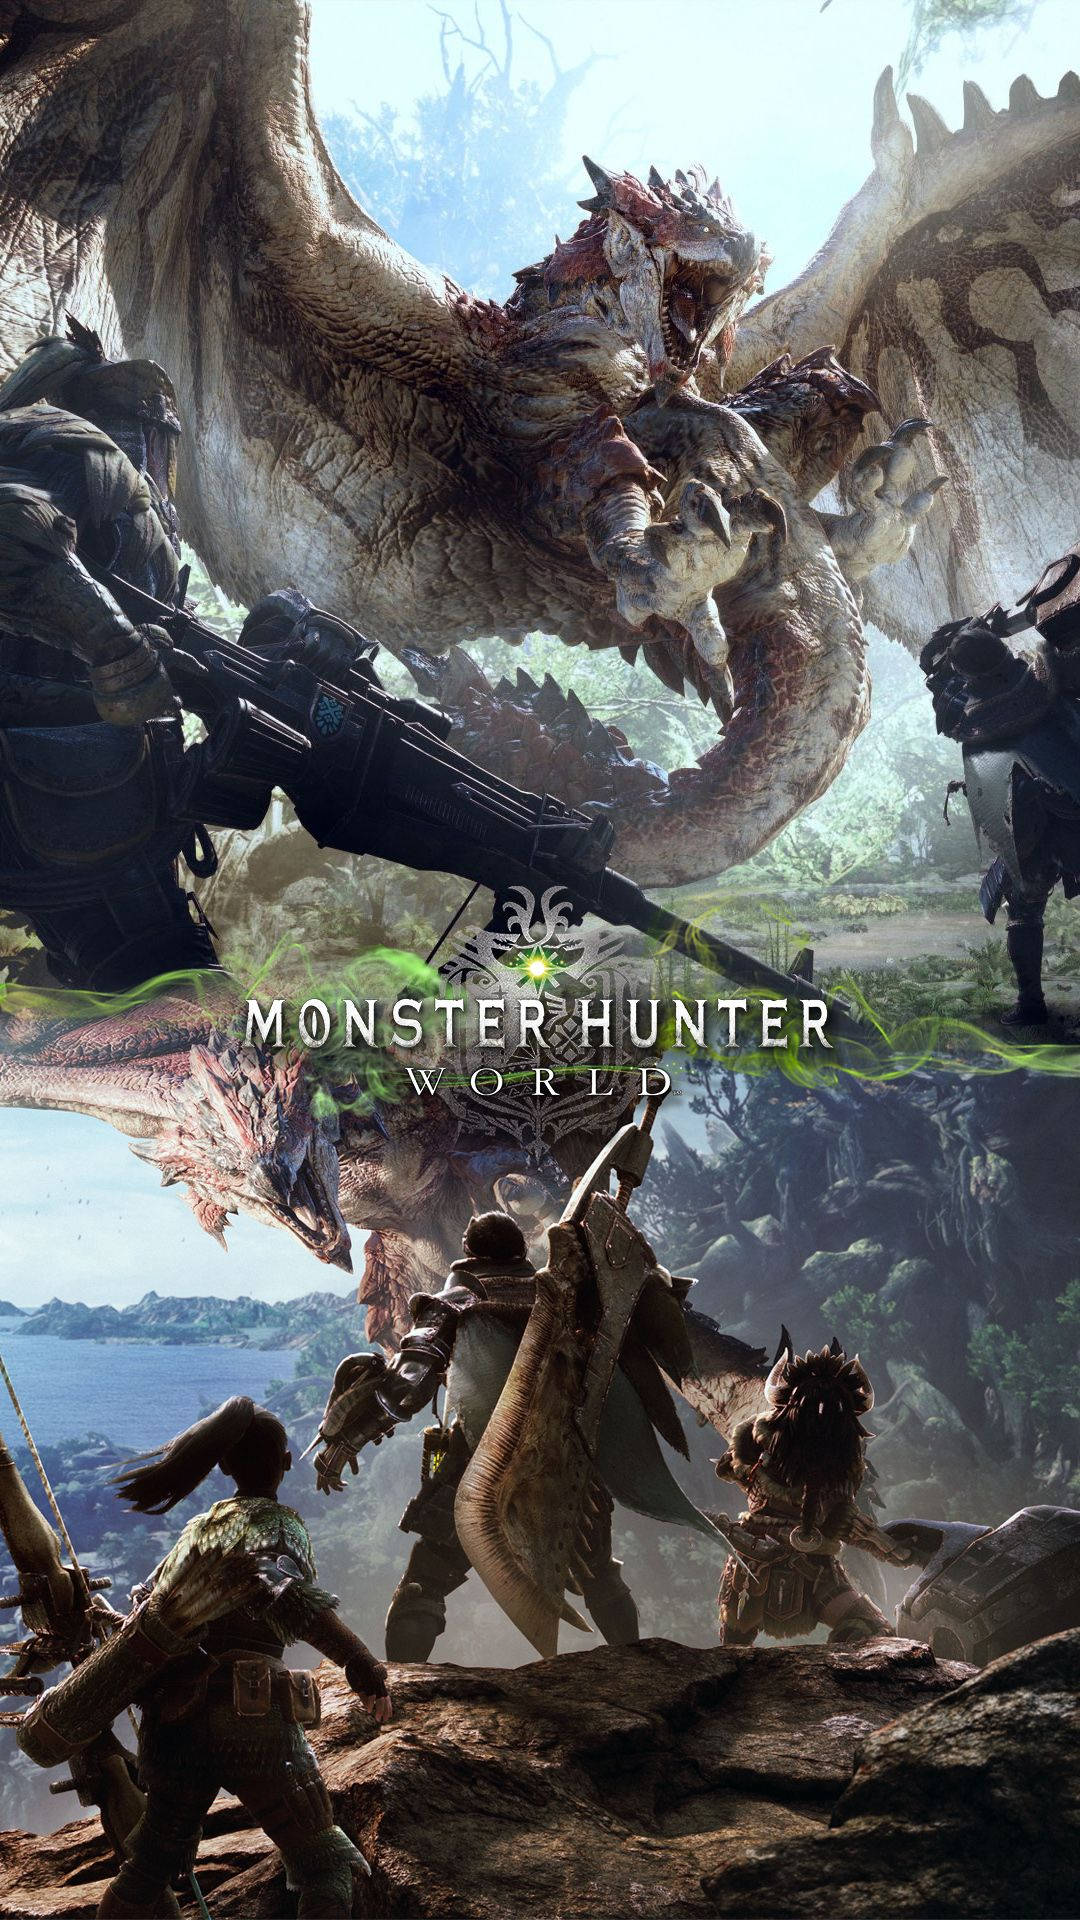 Gördig Redo Att Ta På Dig Ditt Ultimata Äventyr Med Monster Hunter På Din Nästa Smartphone! Wallpaper